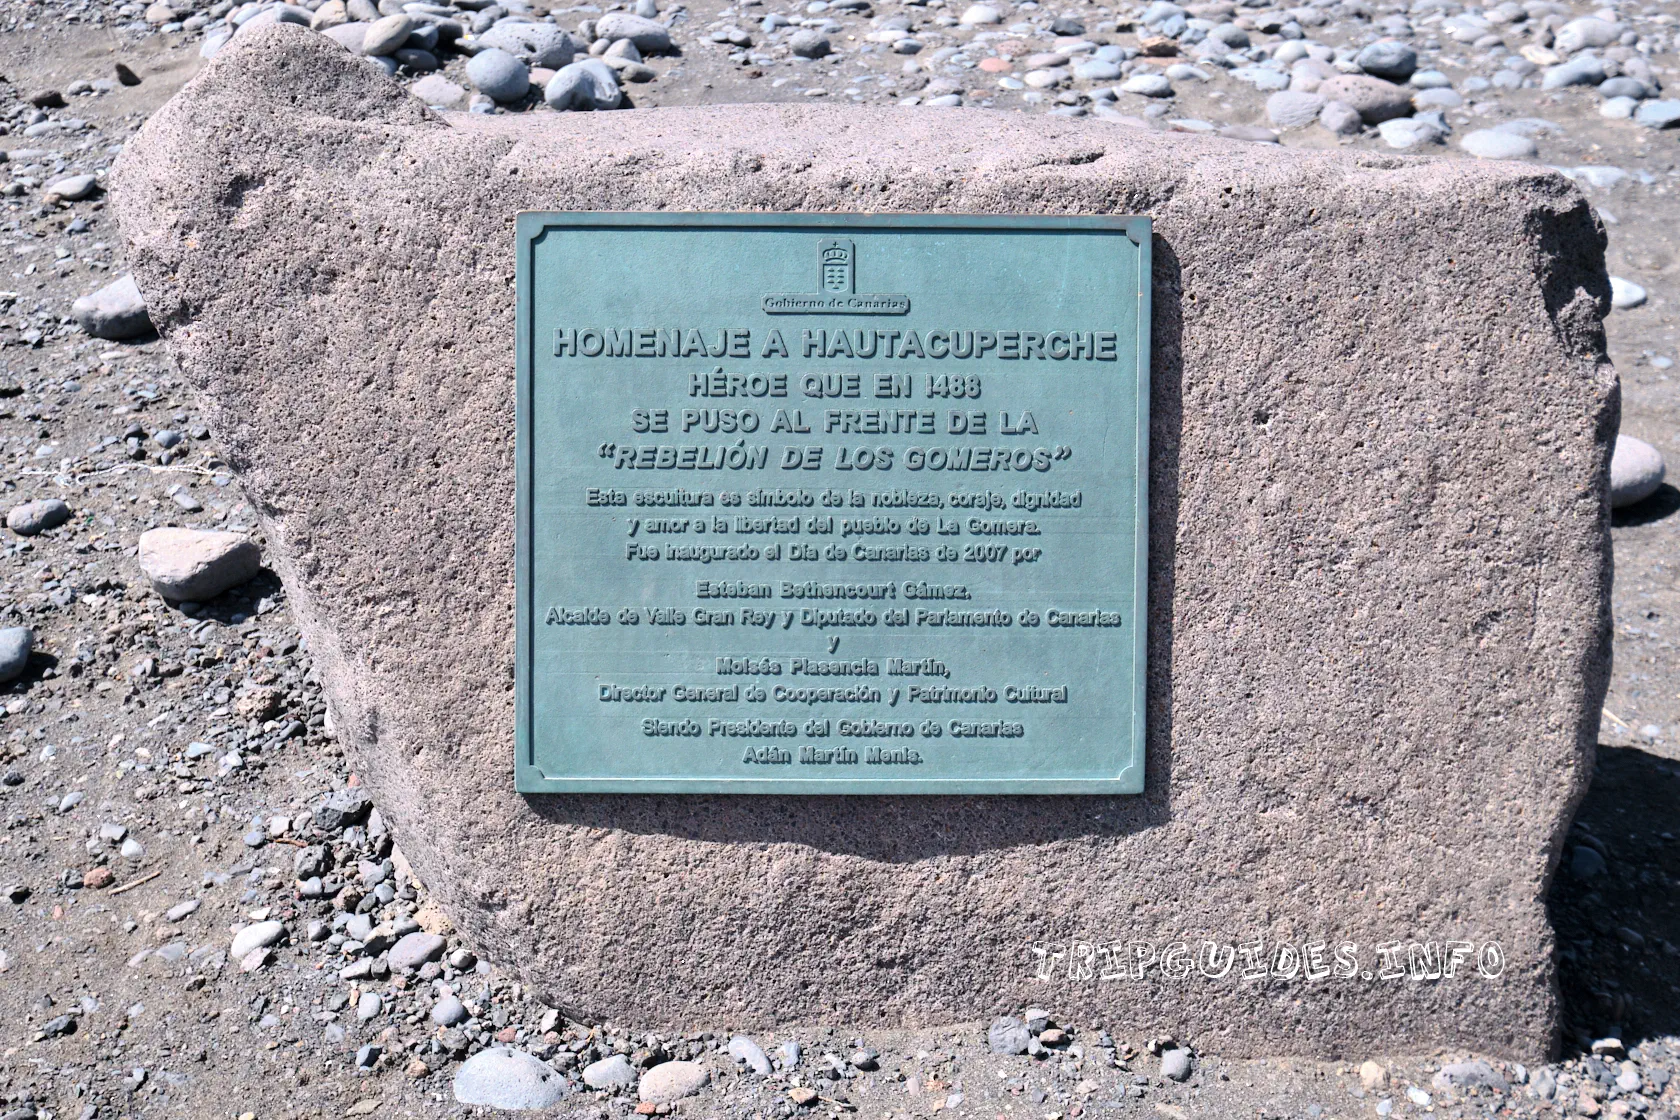 Мемориальная табличка к статуе Хаутакуперче